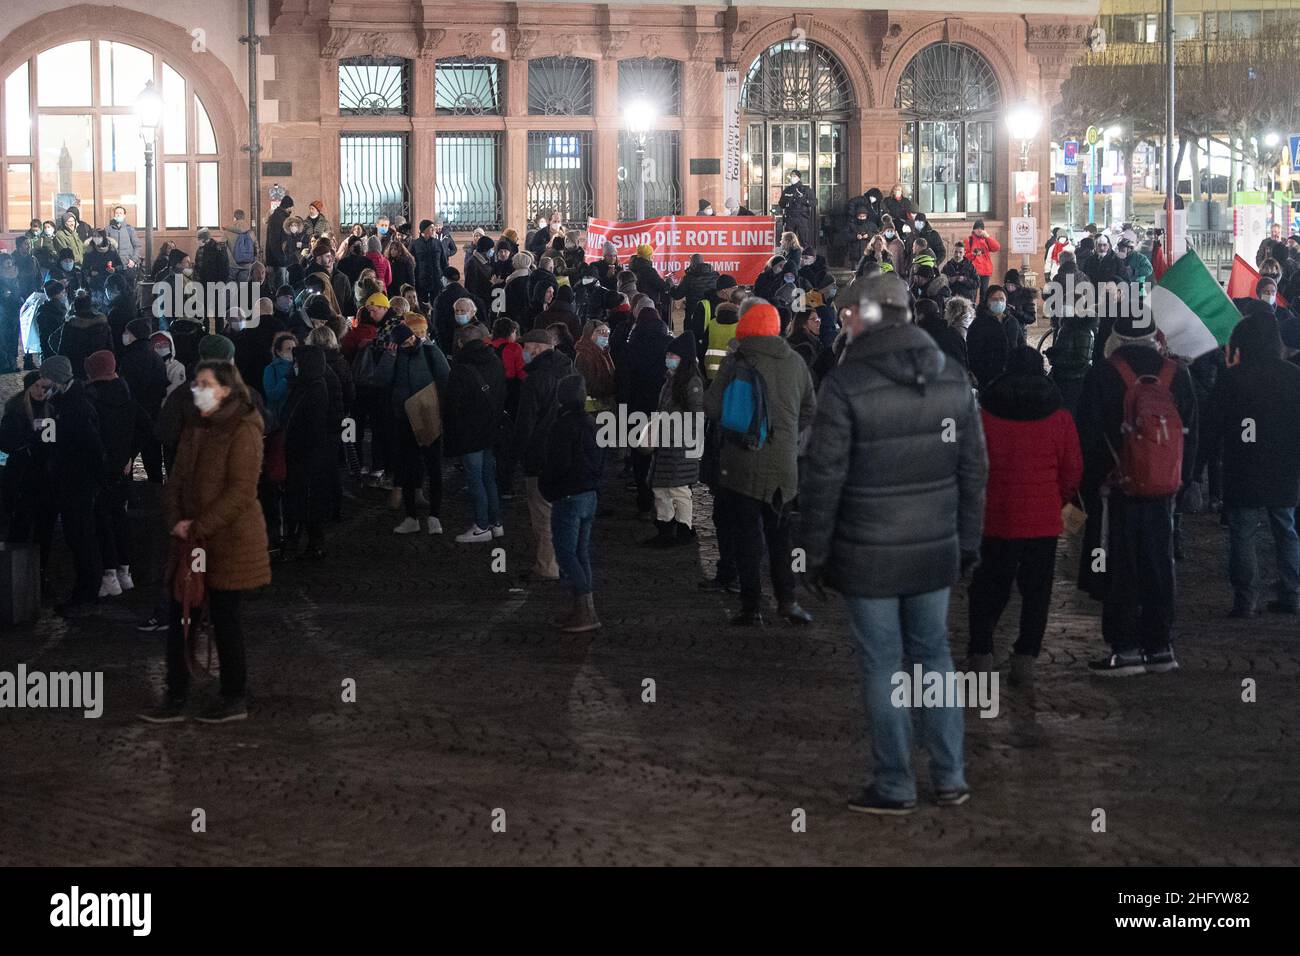 17 January 2022, Hessen, Frankfurt/Main: Demonstranten stehen während einer Demonstration gegen die Corona-Maßnahmen mit einem Banner, auf dem 'Wir sind die rote Linie' steht, auf dem Römer. Photo: Sebastian Gollnow/dpa Stock Photo